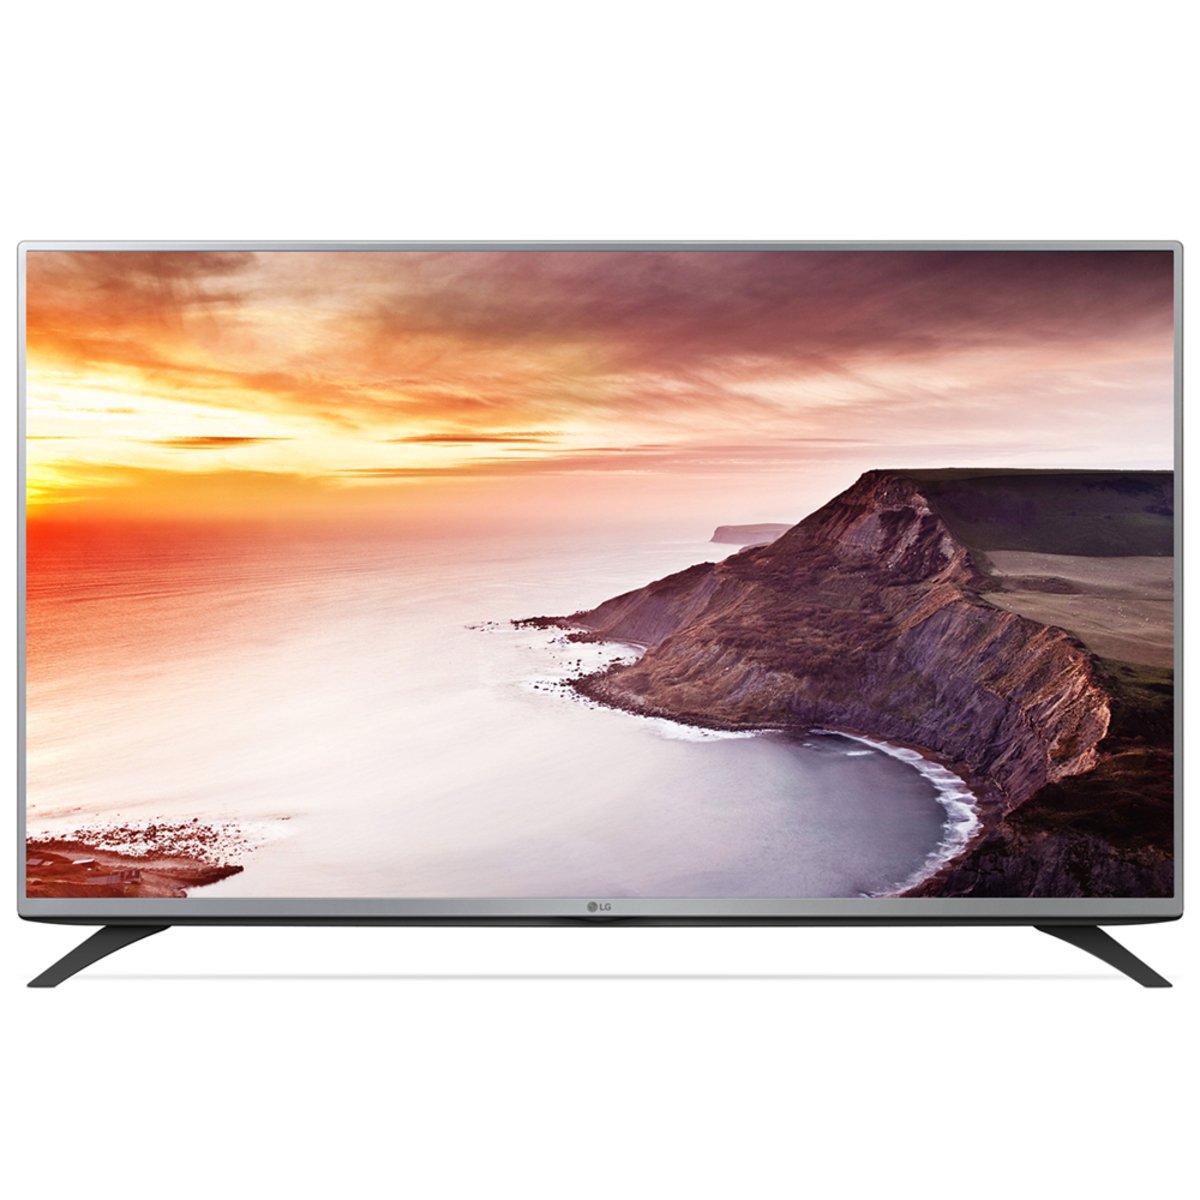 LG Full HD LED TV 49LF540T 49inch